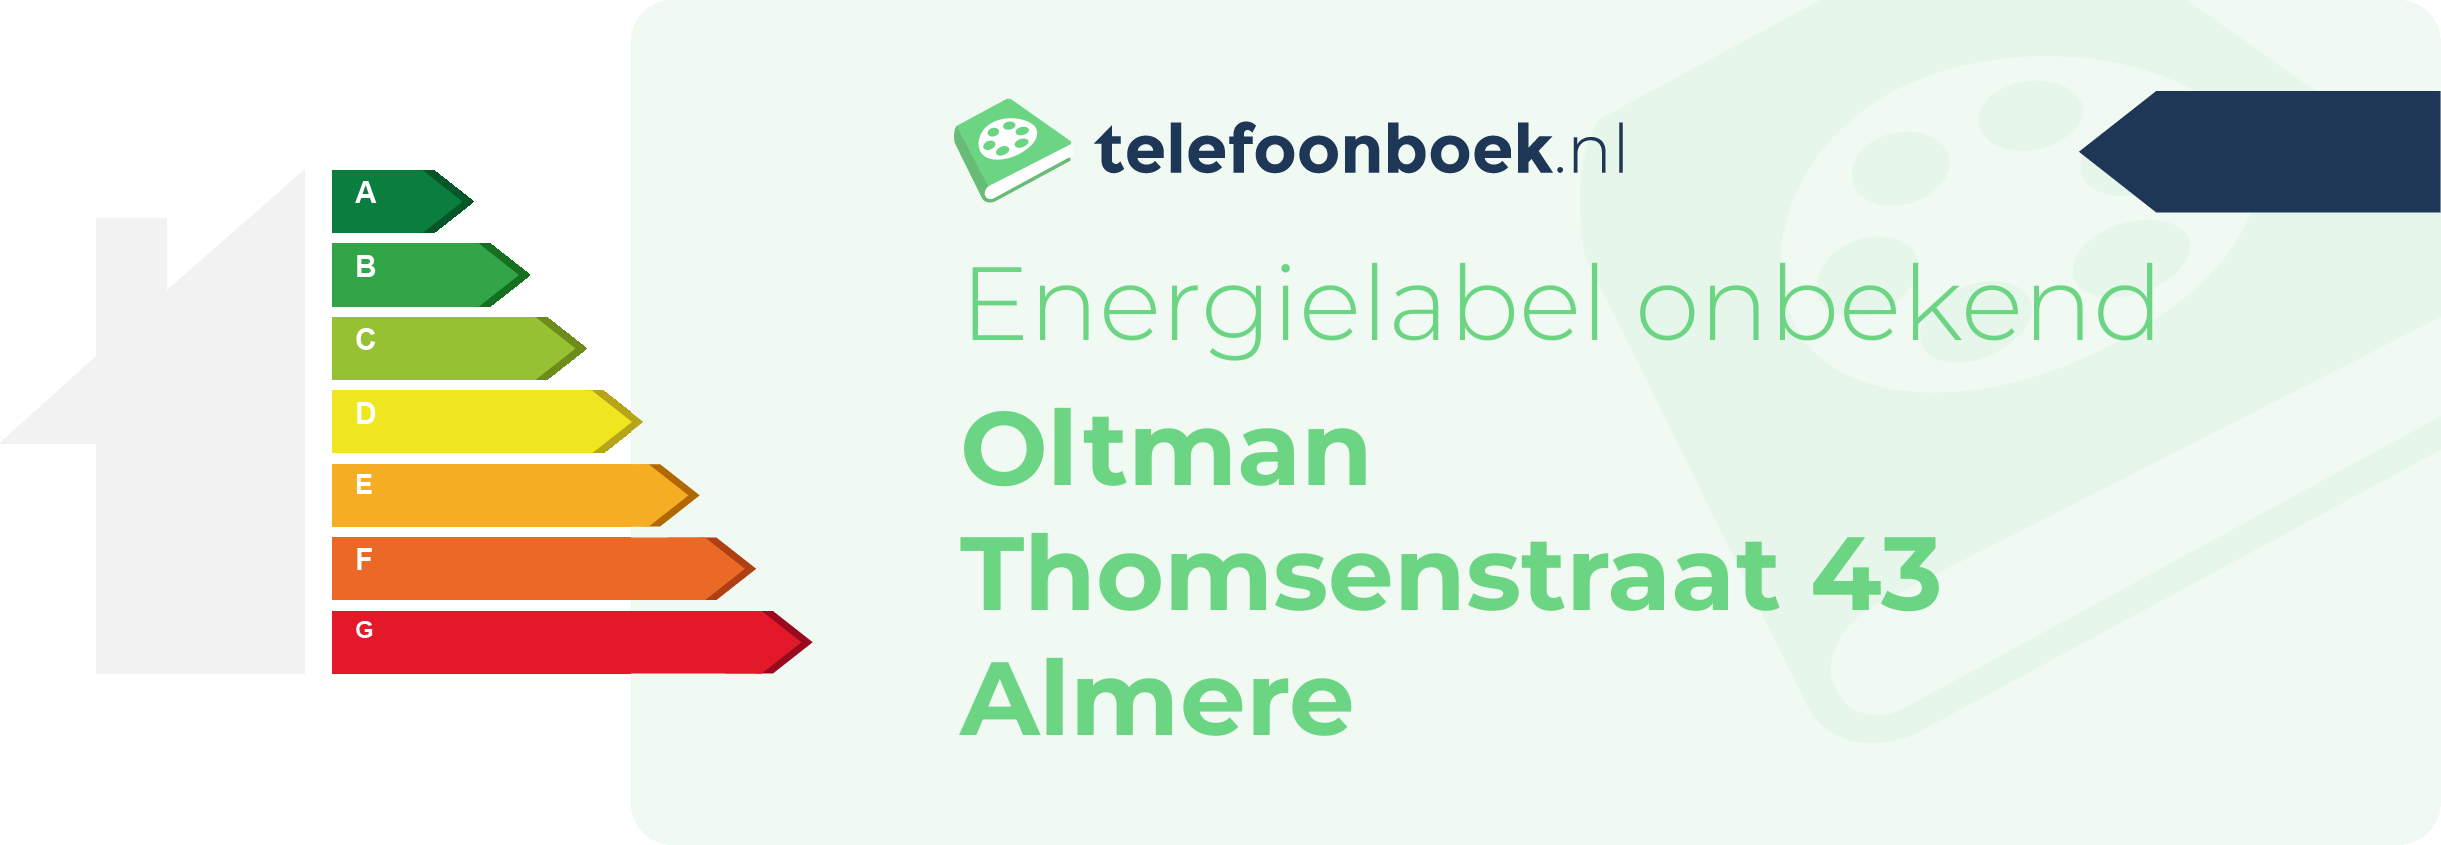 Energielabel Oltman Thomsenstraat 43 Almere